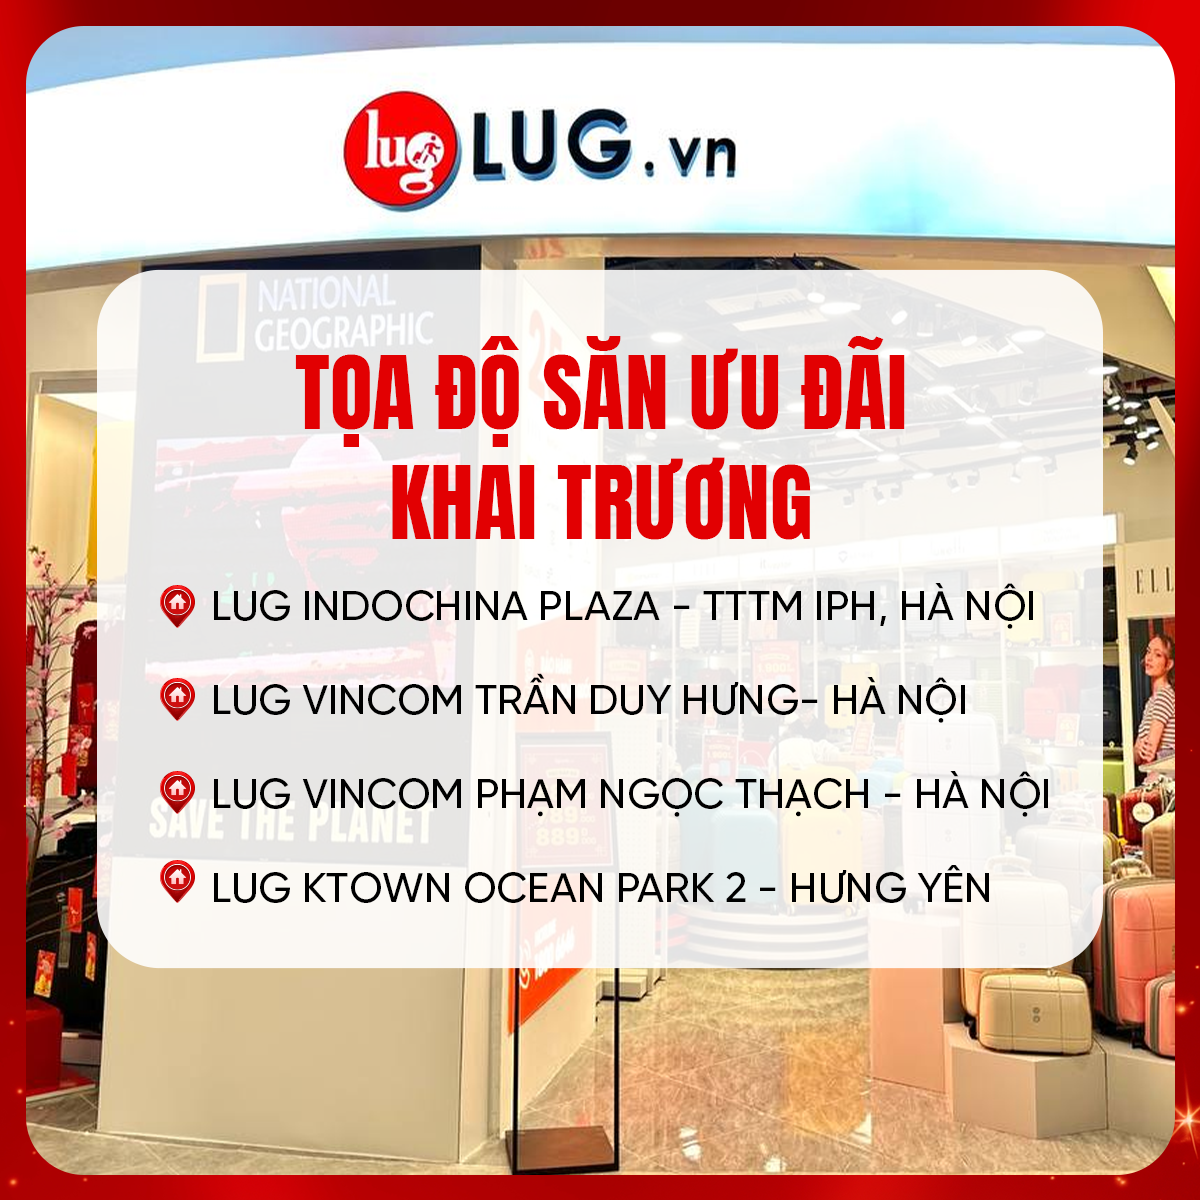 Hé lộ tọa độ săn ưu đãi liên hoàn khai trương tại LUG.vn - Vali chỉ 599k - 3